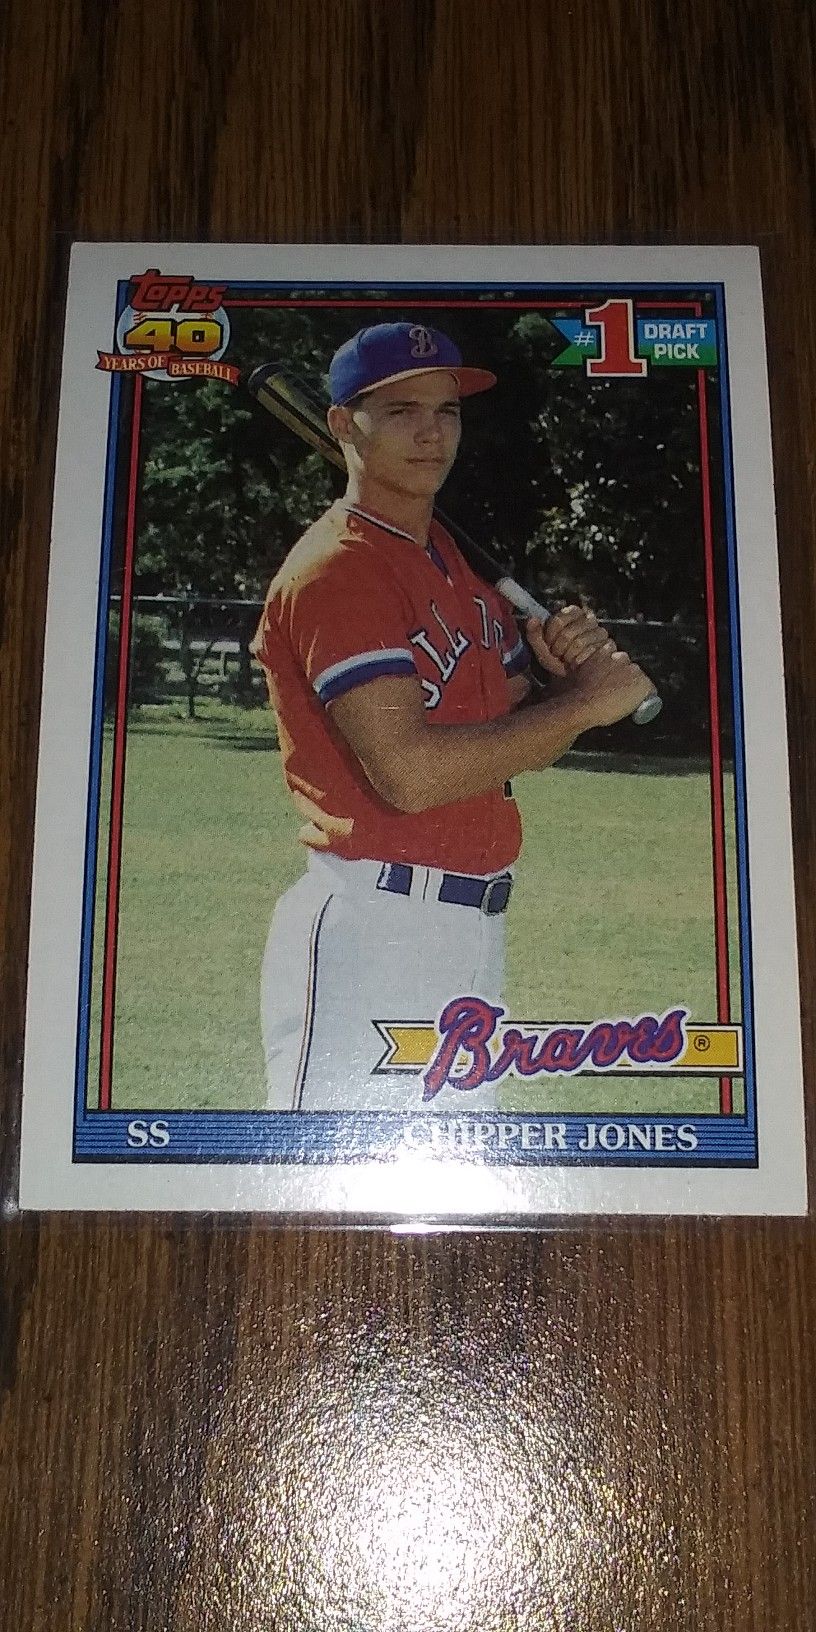 Chipper Jones Rookie